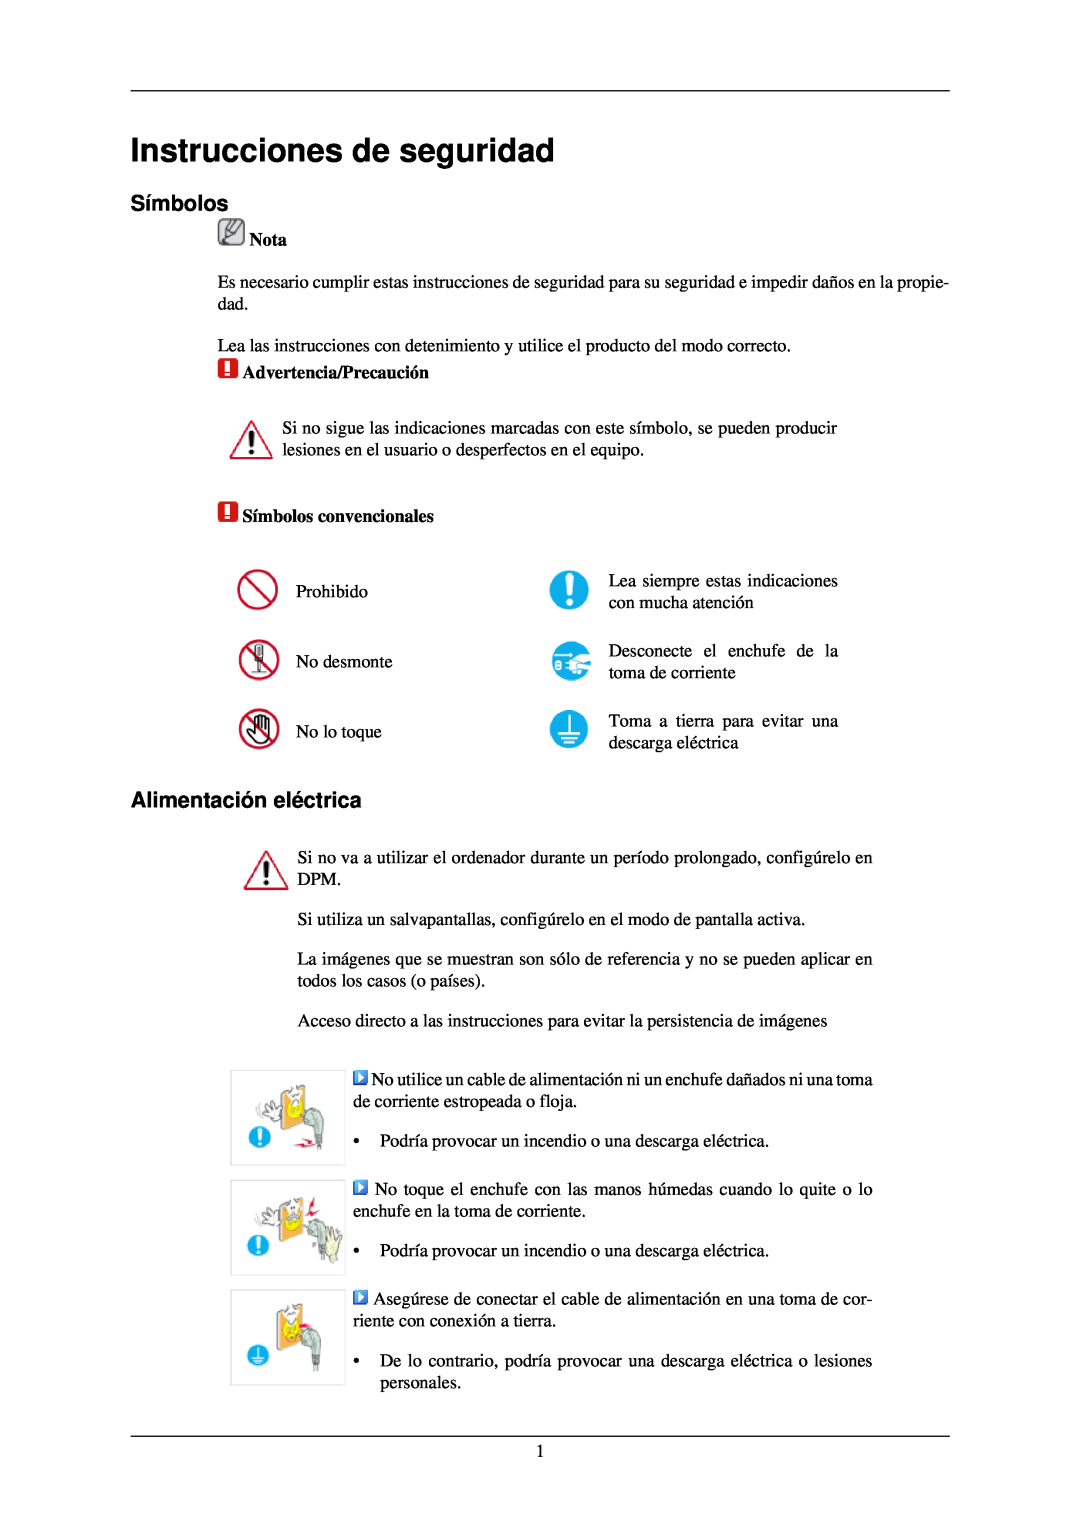 Samsung LH40TCQMBG/EN manual Instrucciones de seguridad, Símbolos, Alimentación eléctrica, Nota, Advertencia/Precaución 